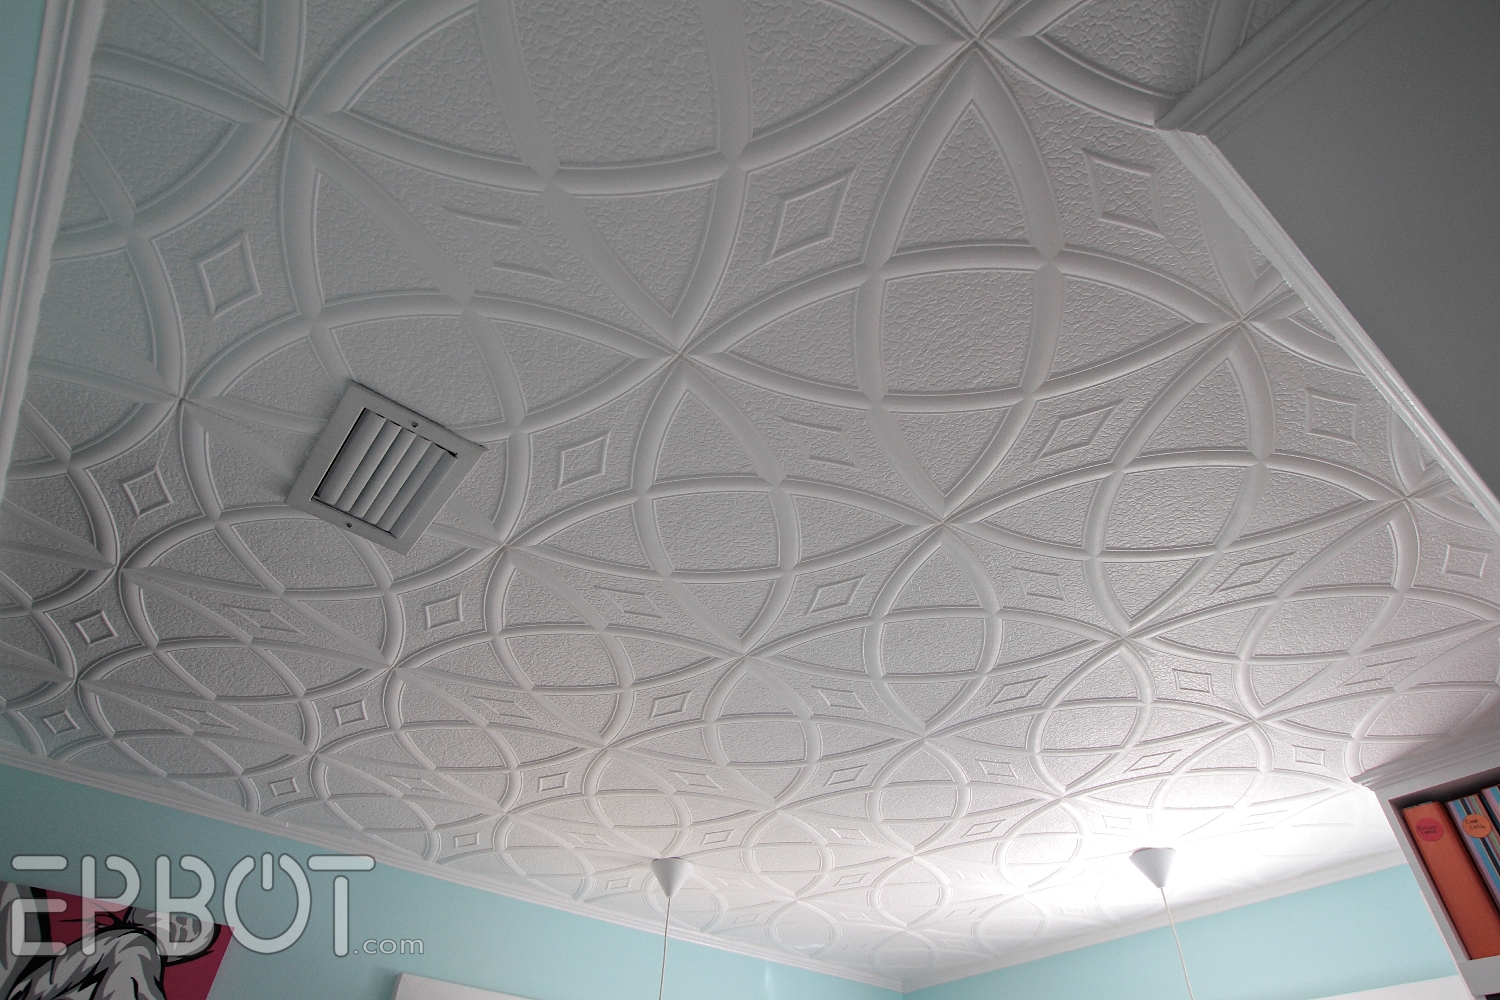 Polystyrene Ceiling Tiles Fire Polystyrene Ceiling Tiles Fire epbot diy faux tin tile ceiling 1500 X 1000